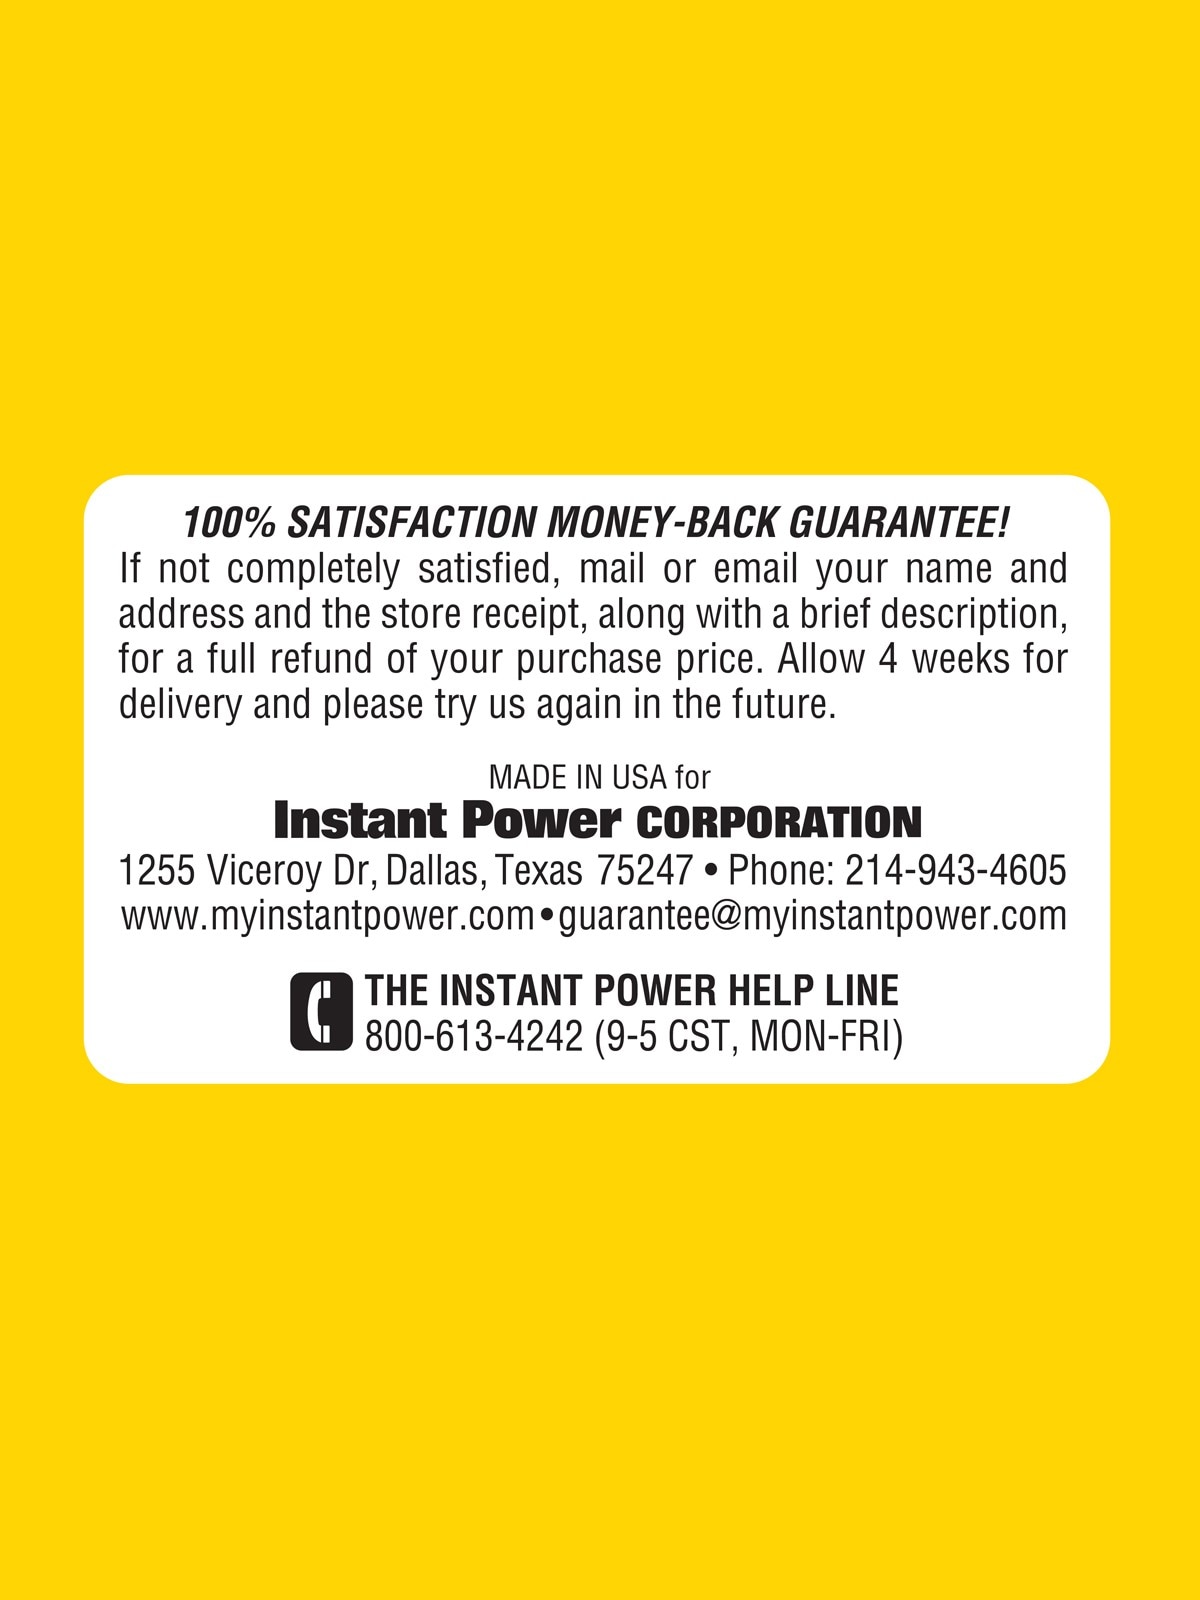 Instant Power Heavy Duty Drain Opener (Grey Bottle) - Instant Power